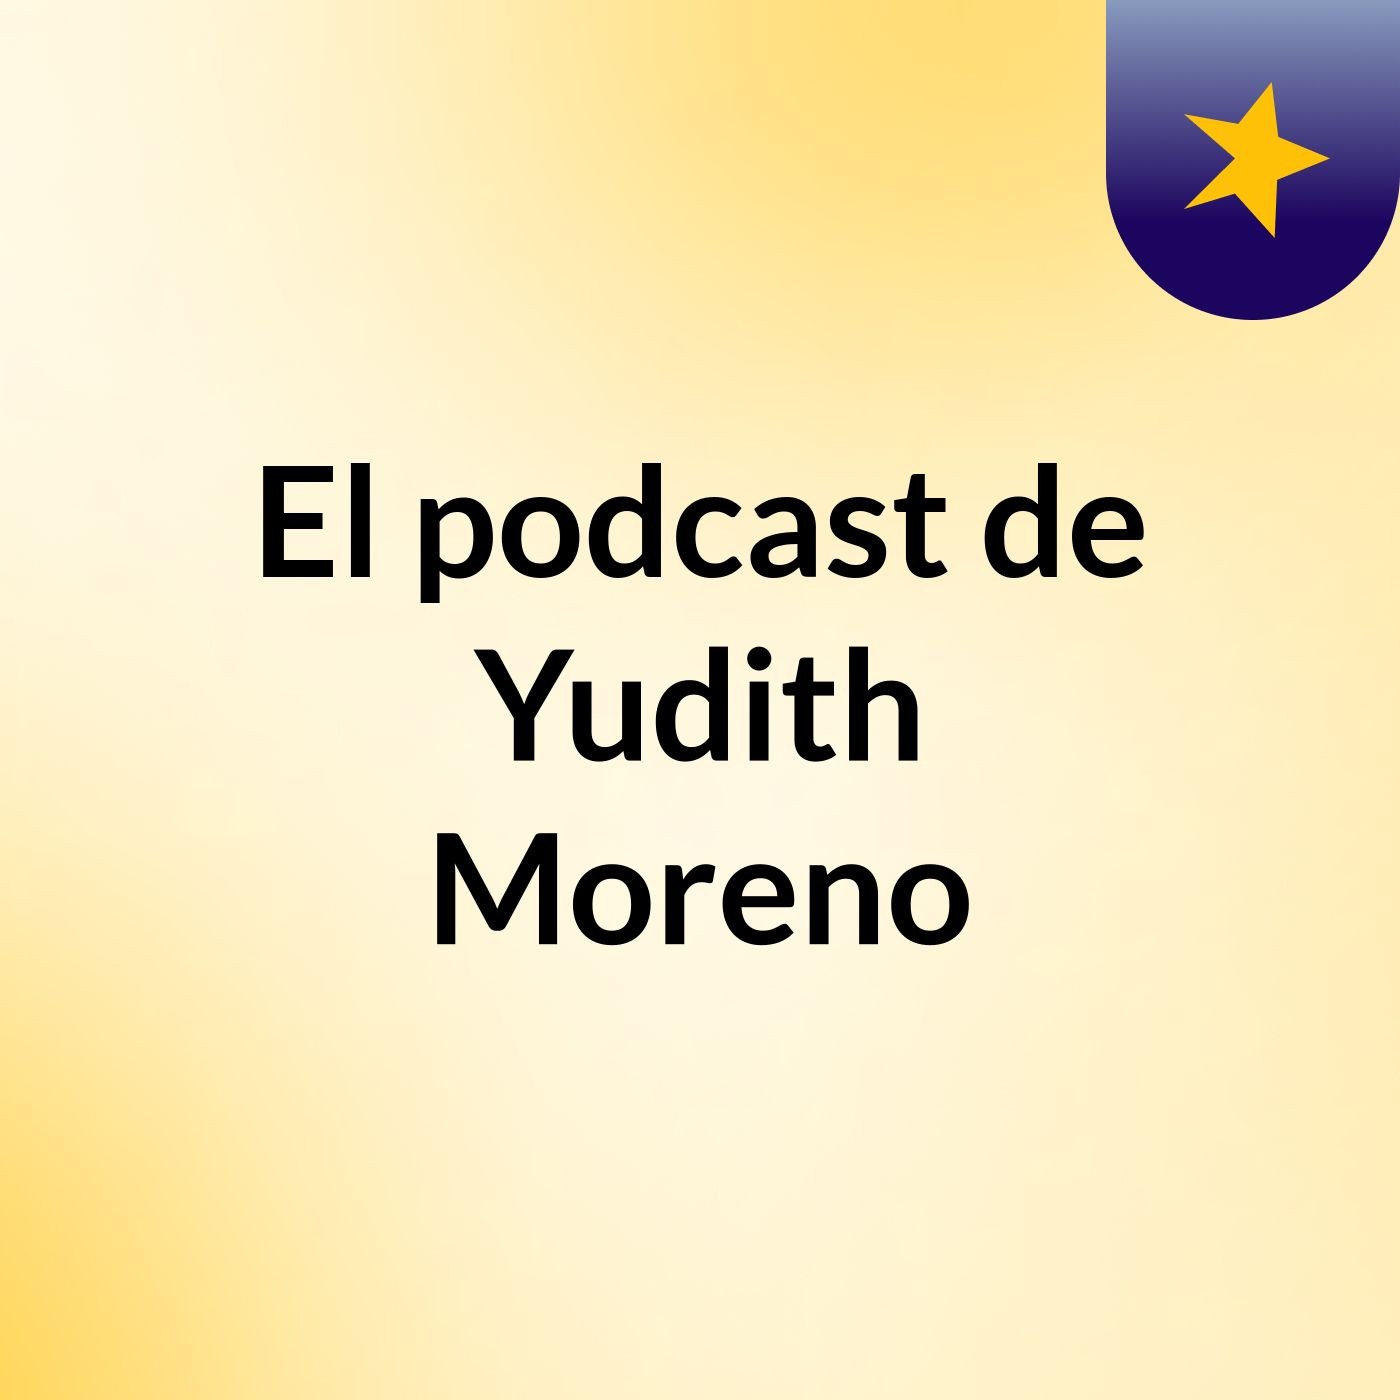 El podcast de Yudith Moreno